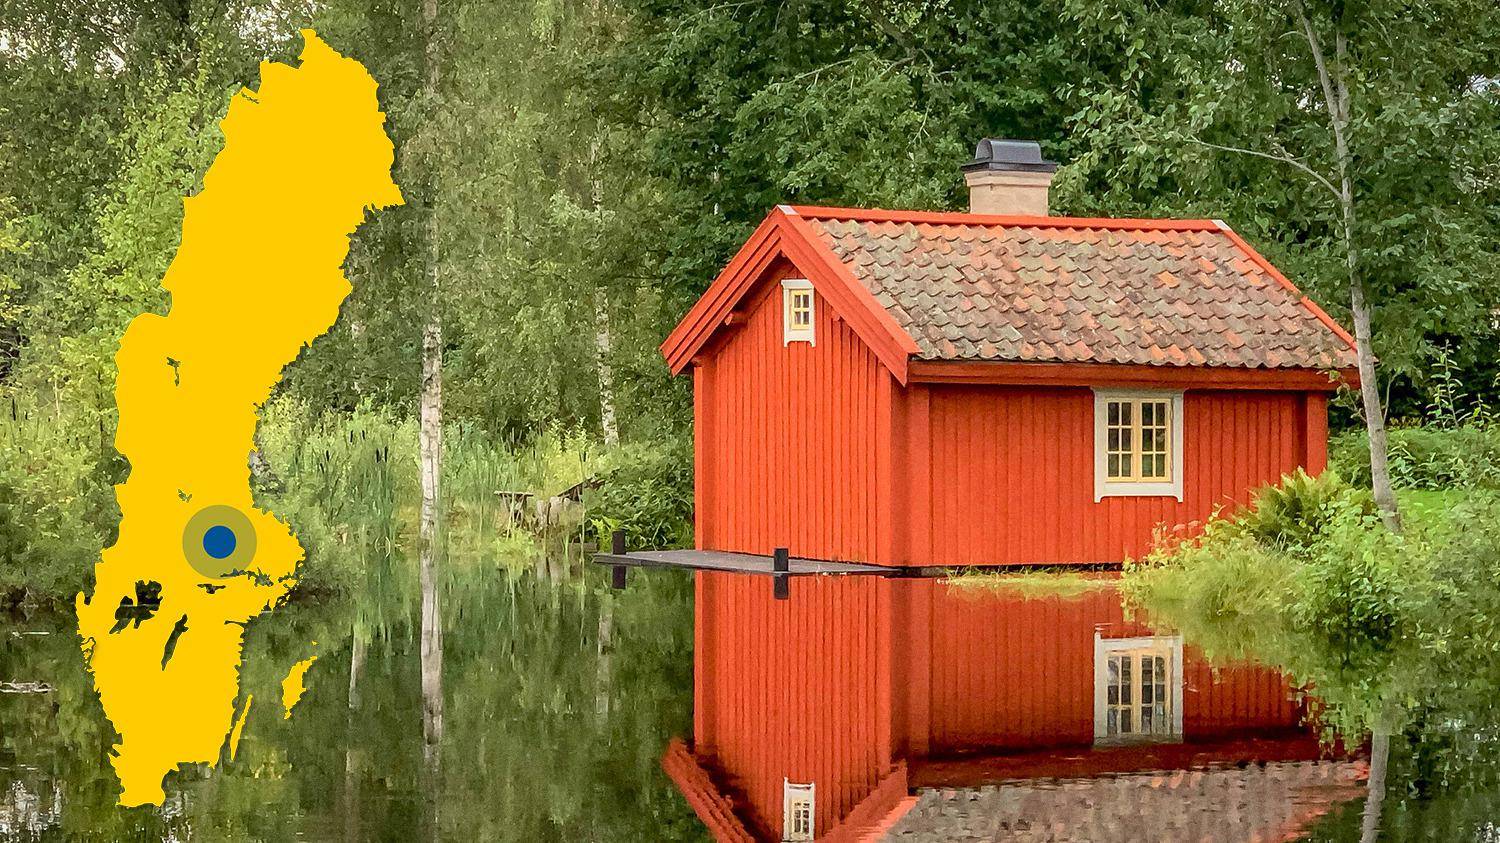 Am Rande des Wassers steht ein rotes Holzhaus mit rotem Ziegeldach. Das Haus spiegelt sich im Wasser. Das Bild zeigt eine gelbe Karte von Schweden mit einer Markierung, die den Standort von Norberg anzeigt.